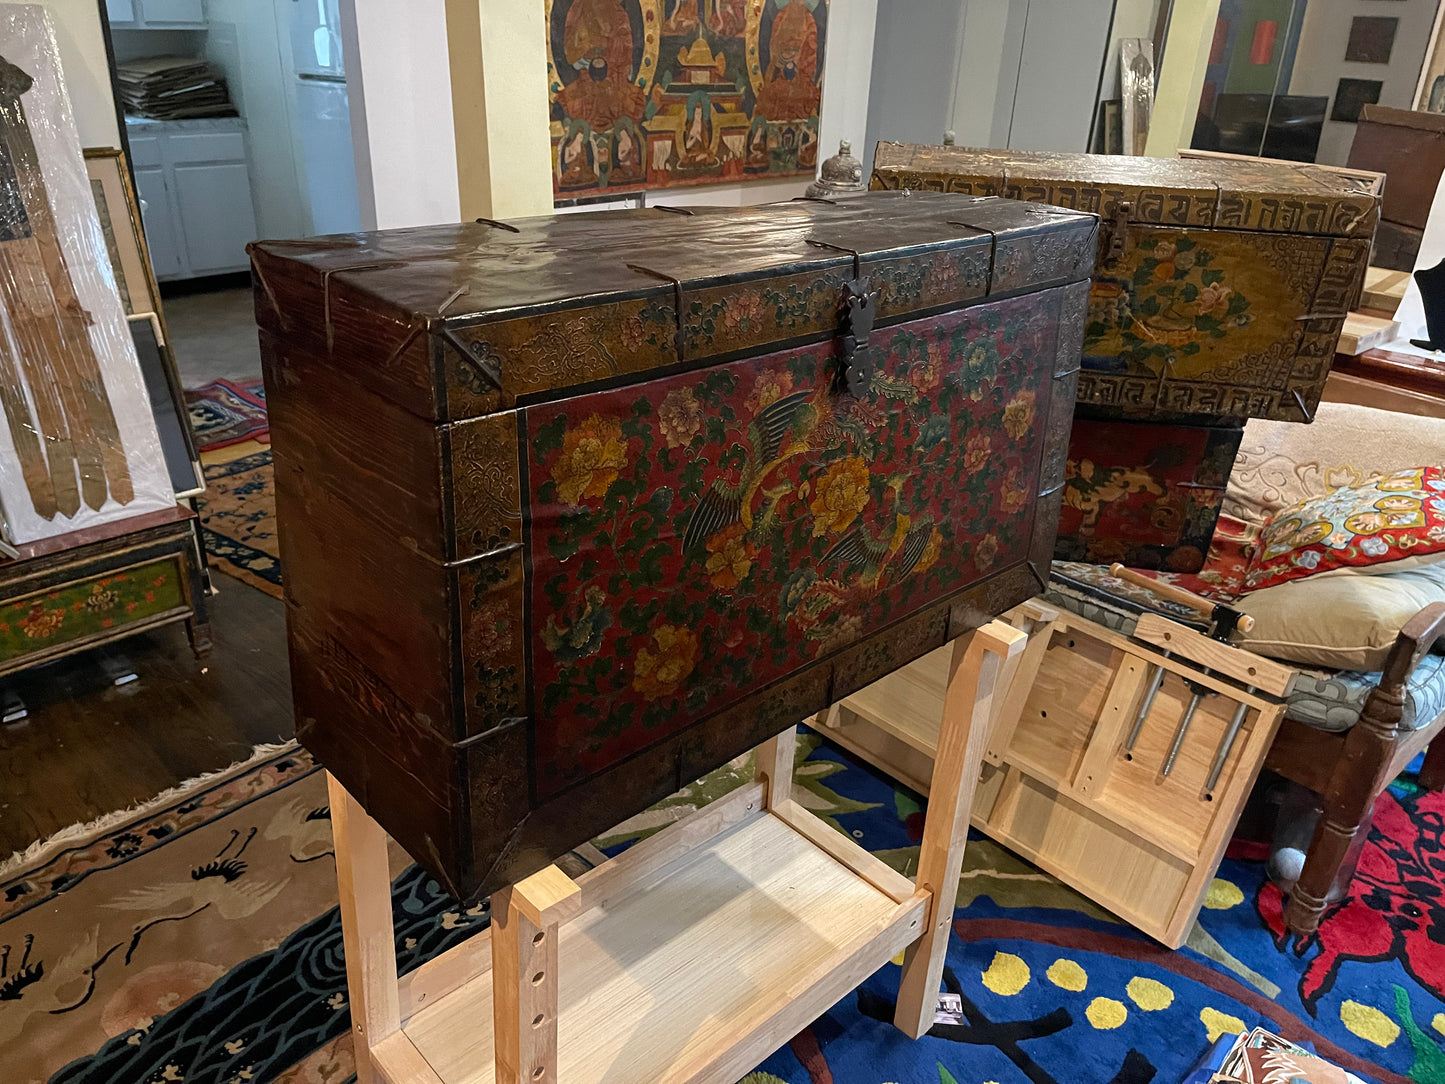 An antique Tibetan wooden chest